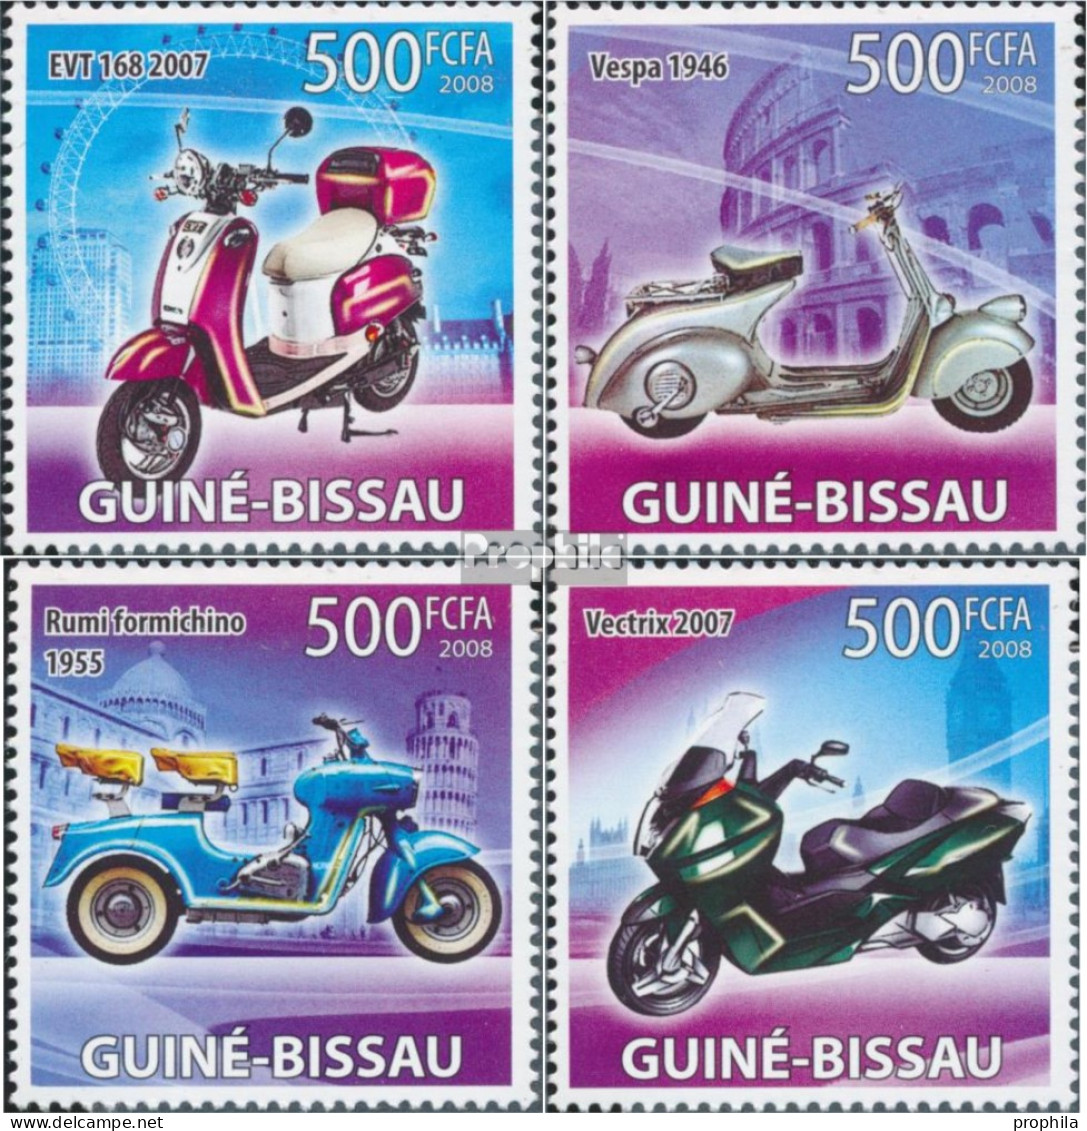 Guinea-Bissau 3889-3892 (kompl. Ausgabe) Postfrisch 2008 Motorroller - Guinée-Bissau